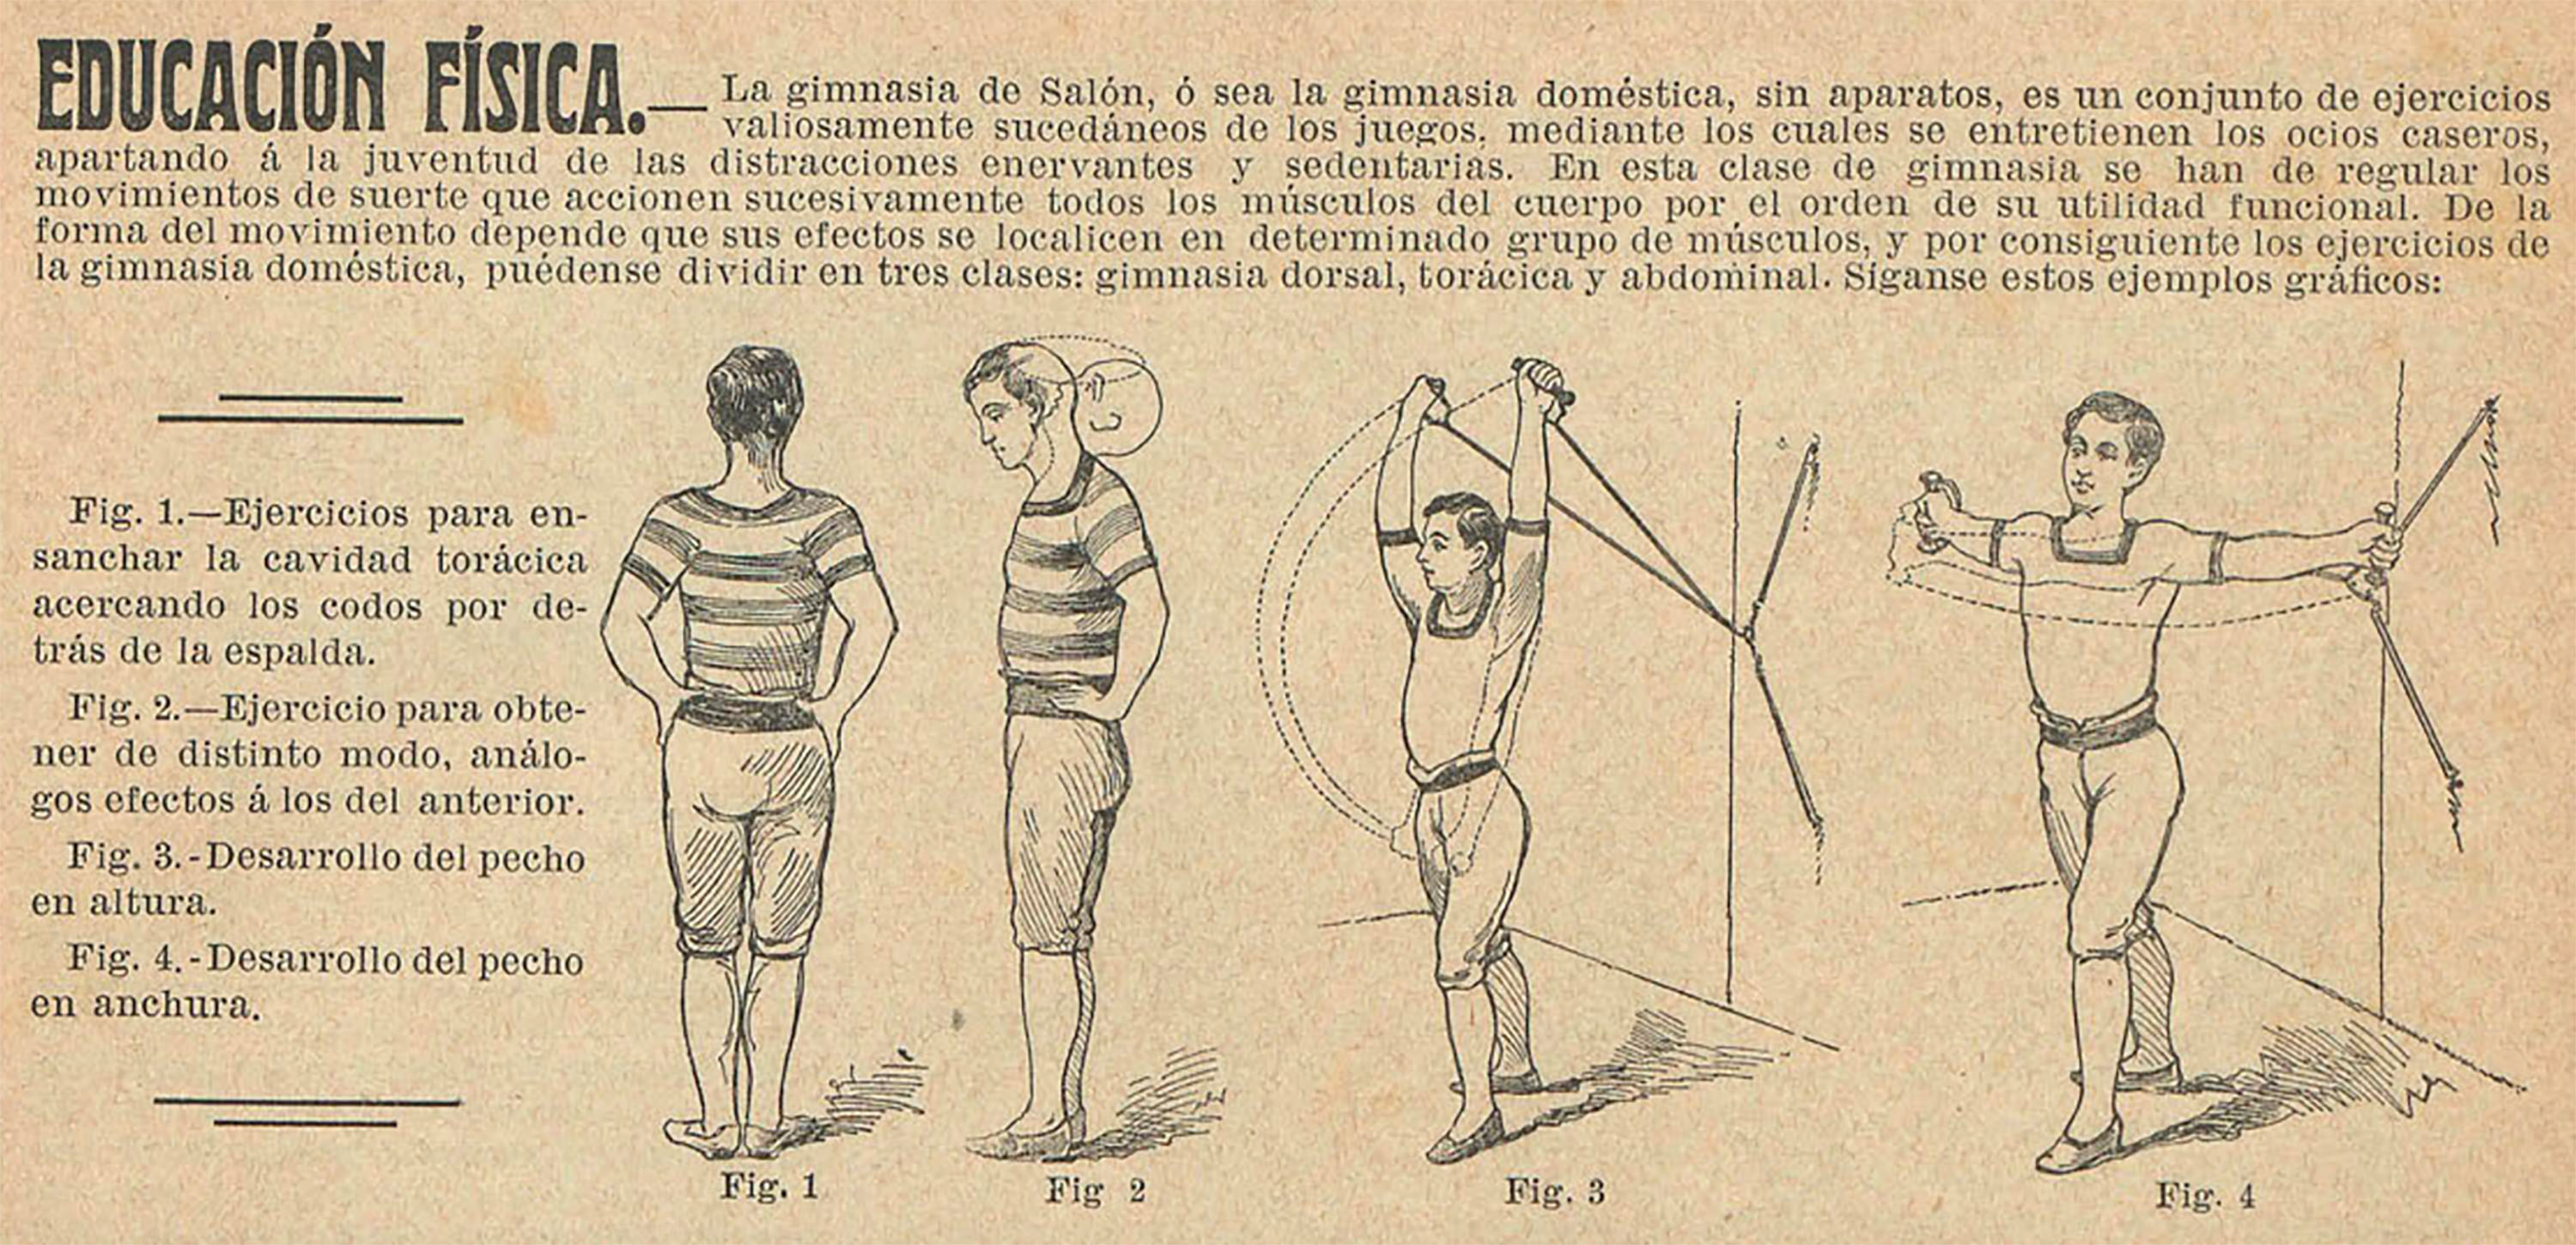 Mi revista, Barcelona, vol. 1, 1911, p. 3